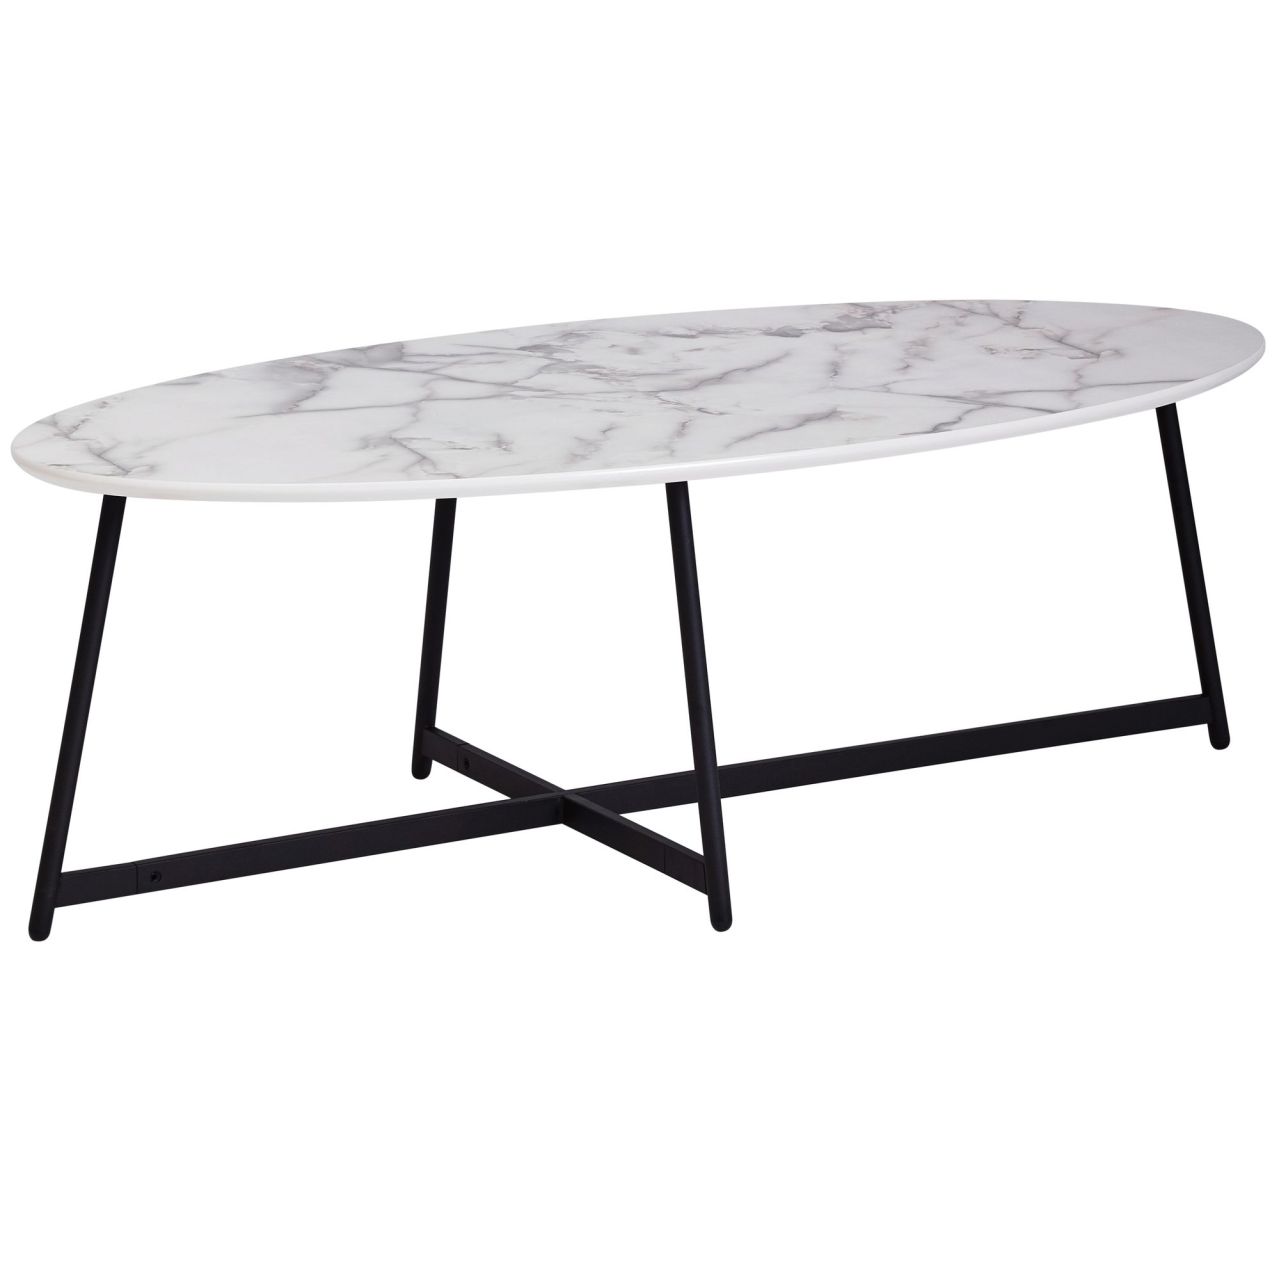 Design Couchtisch Oval 120x60 cm mit Marmor Optik Weiß | Wohnzimmertisch mit Metall-Beine Schwarz | Großer Beistelltisch